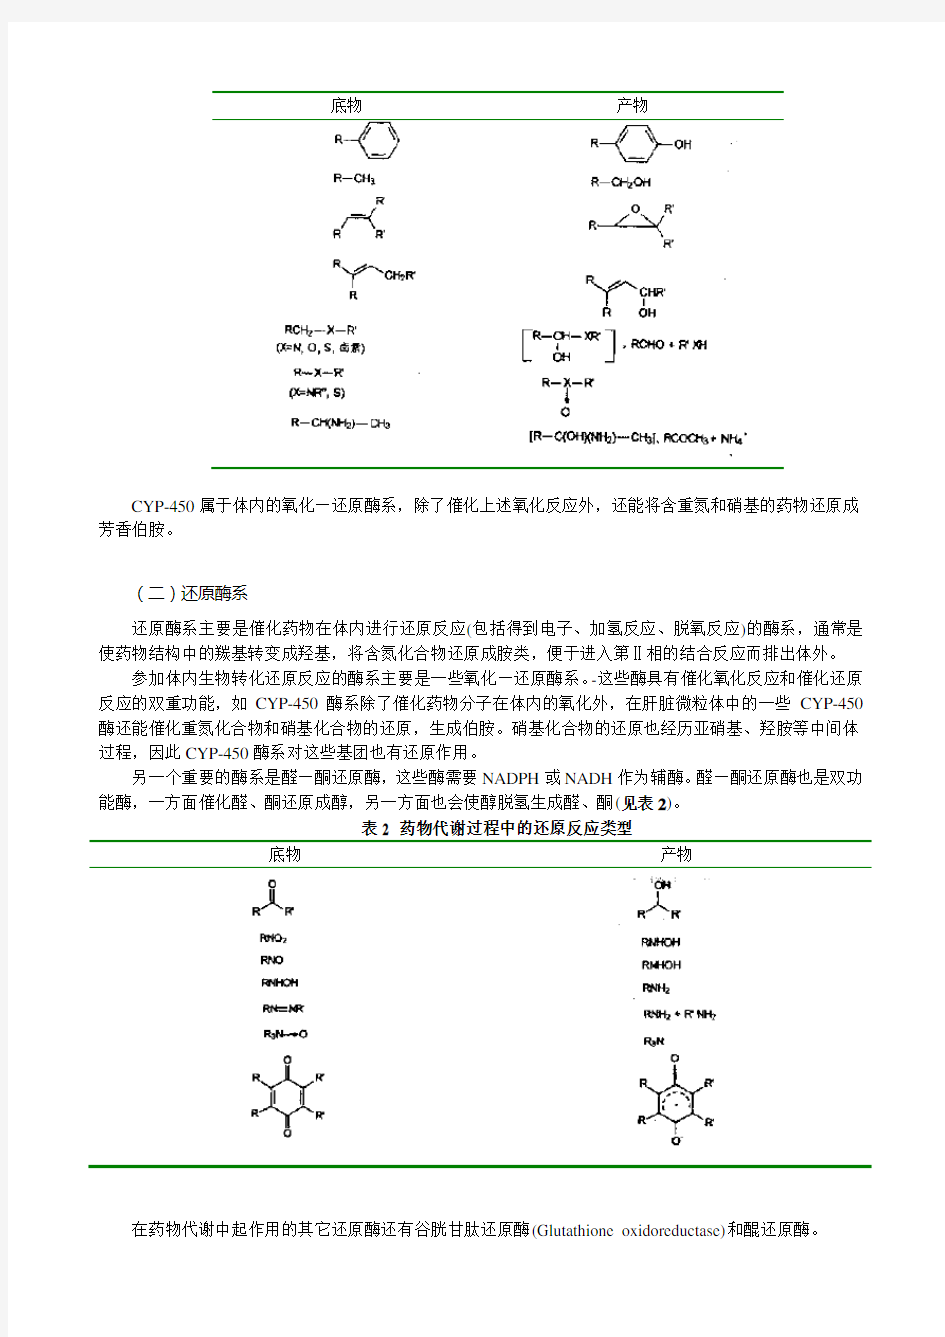 药物化学---药物的化学结构与体内代谢转化